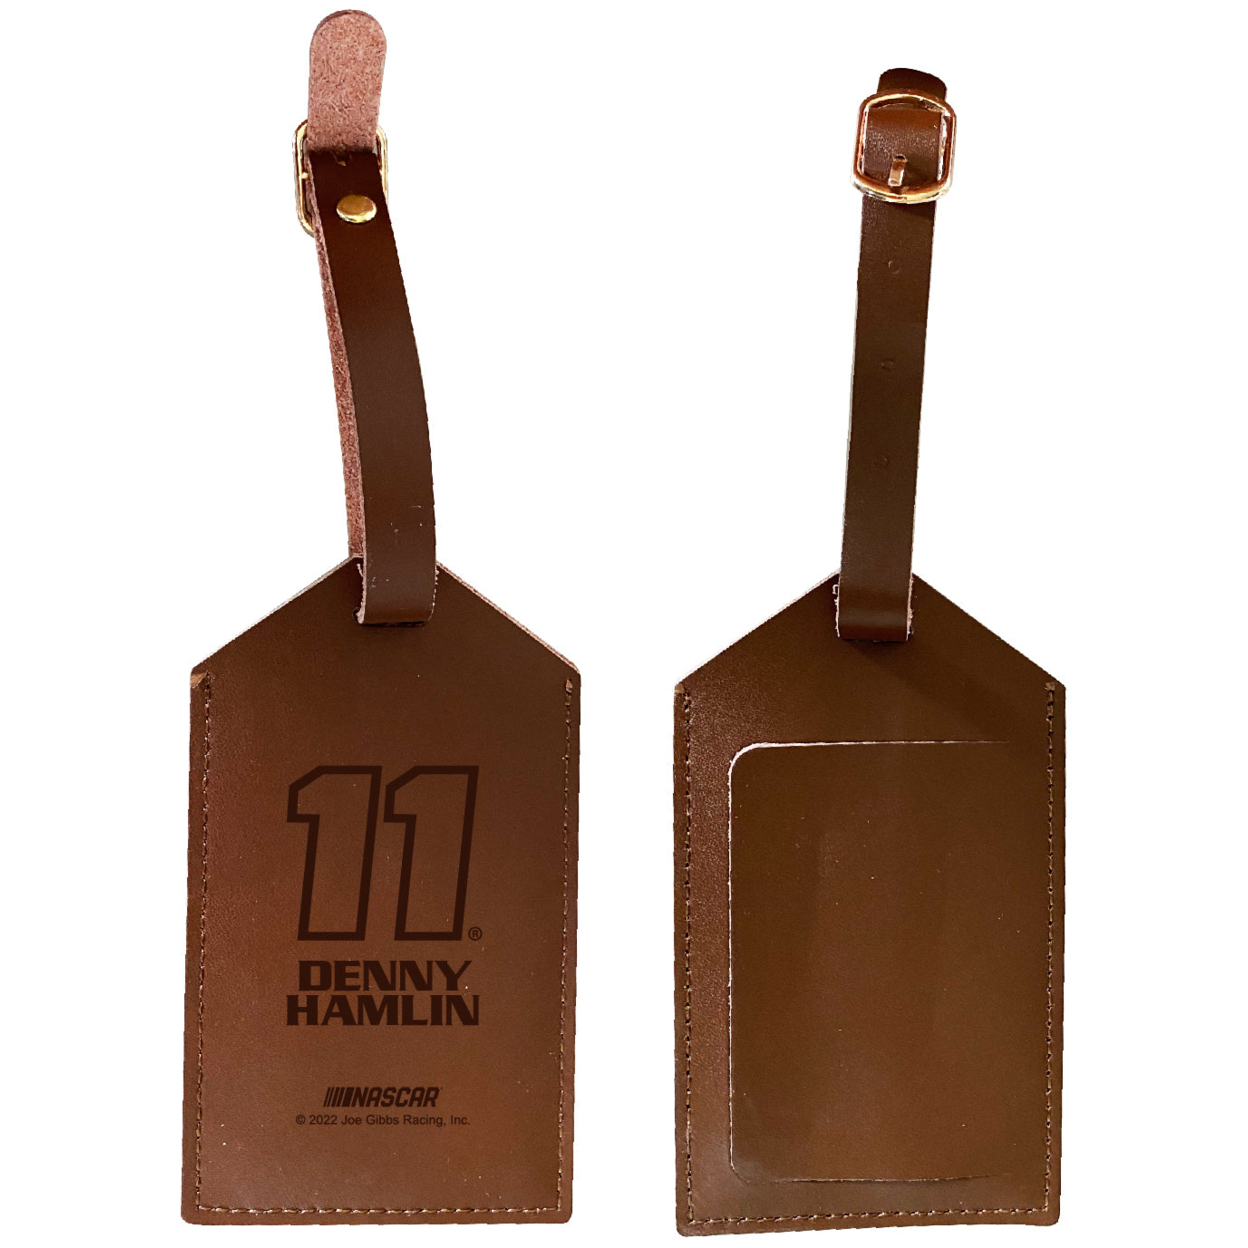 Nascar #11 Denny Hamlin Leather Luggage Tag Engraved